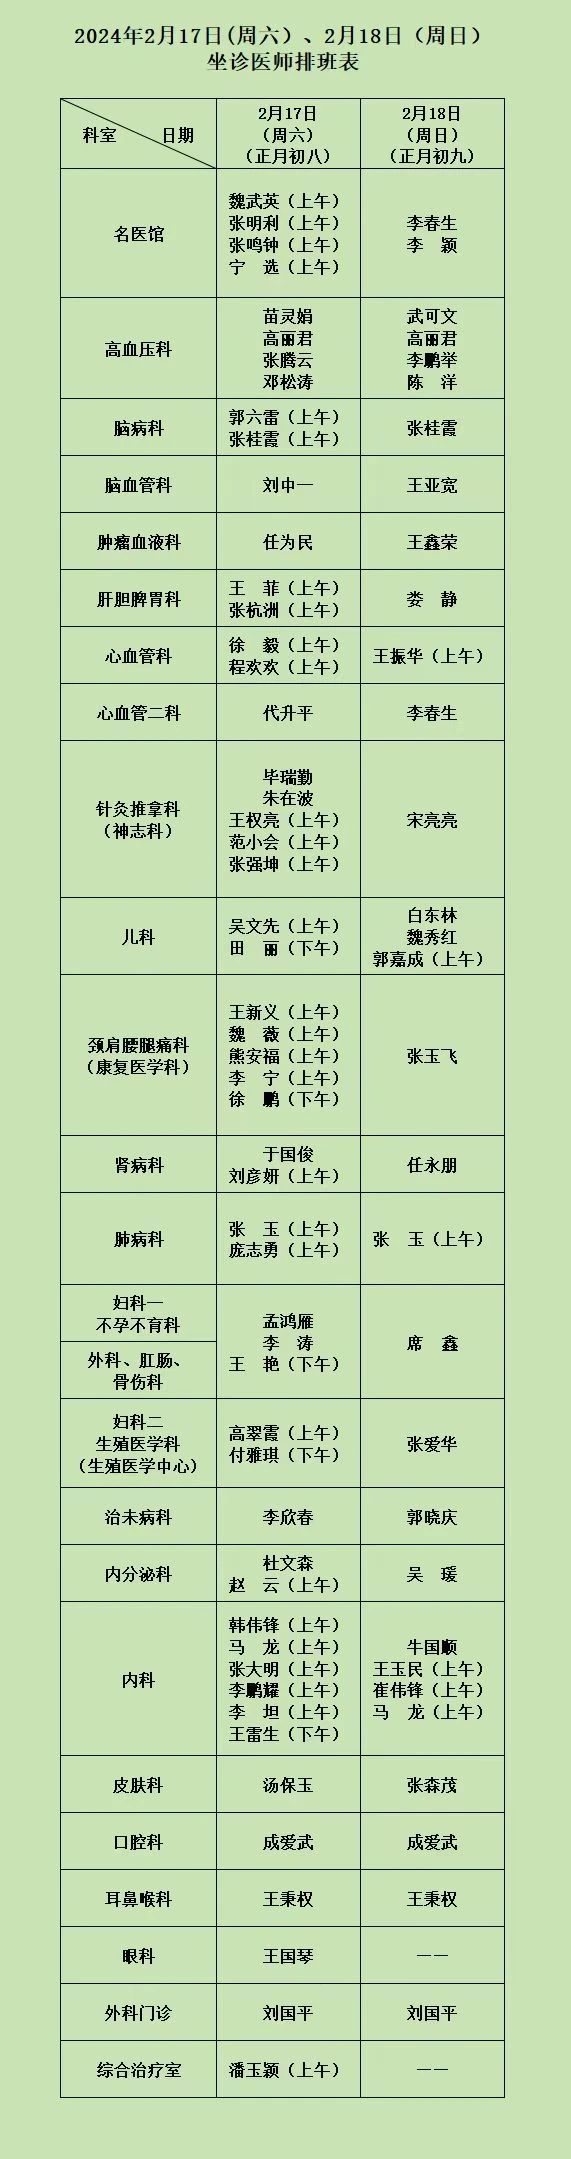 河南省中西医结合医院2月17日（周六）、2月18日（周日）坐诊医师排班表.jpg